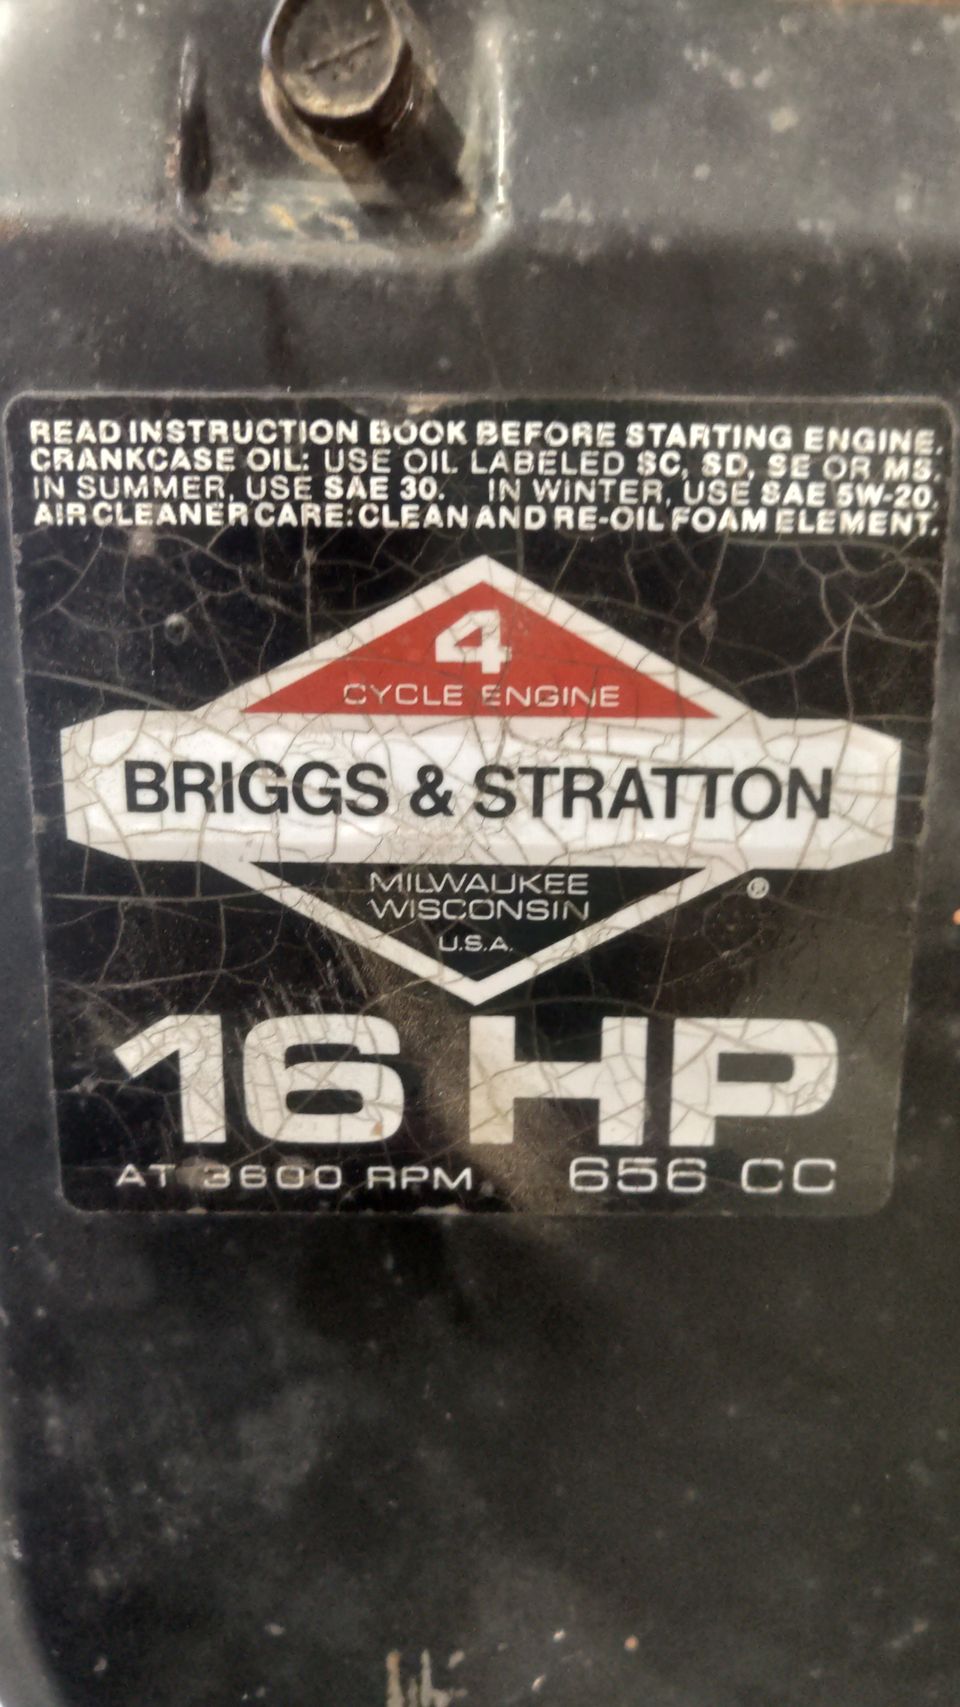 Briggs & Stratton 16hp